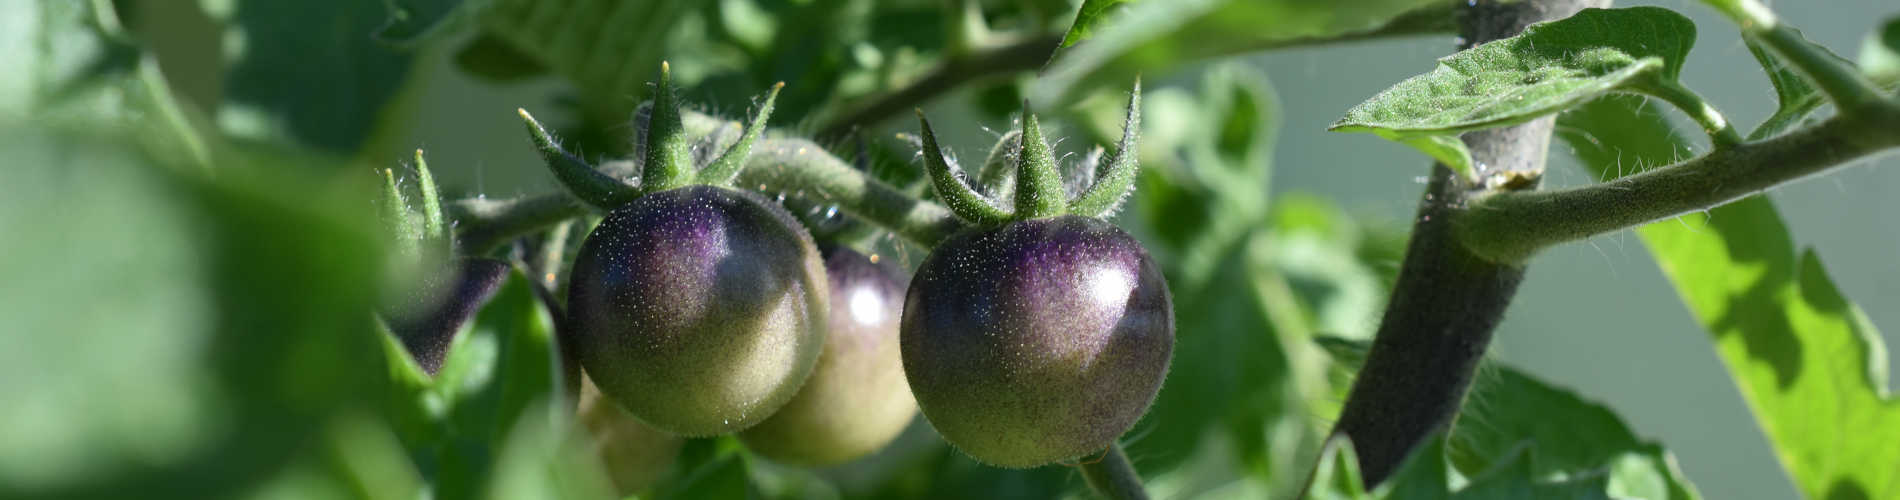 Indigo-Tomate: Kräftige Farben im eigenen Garten